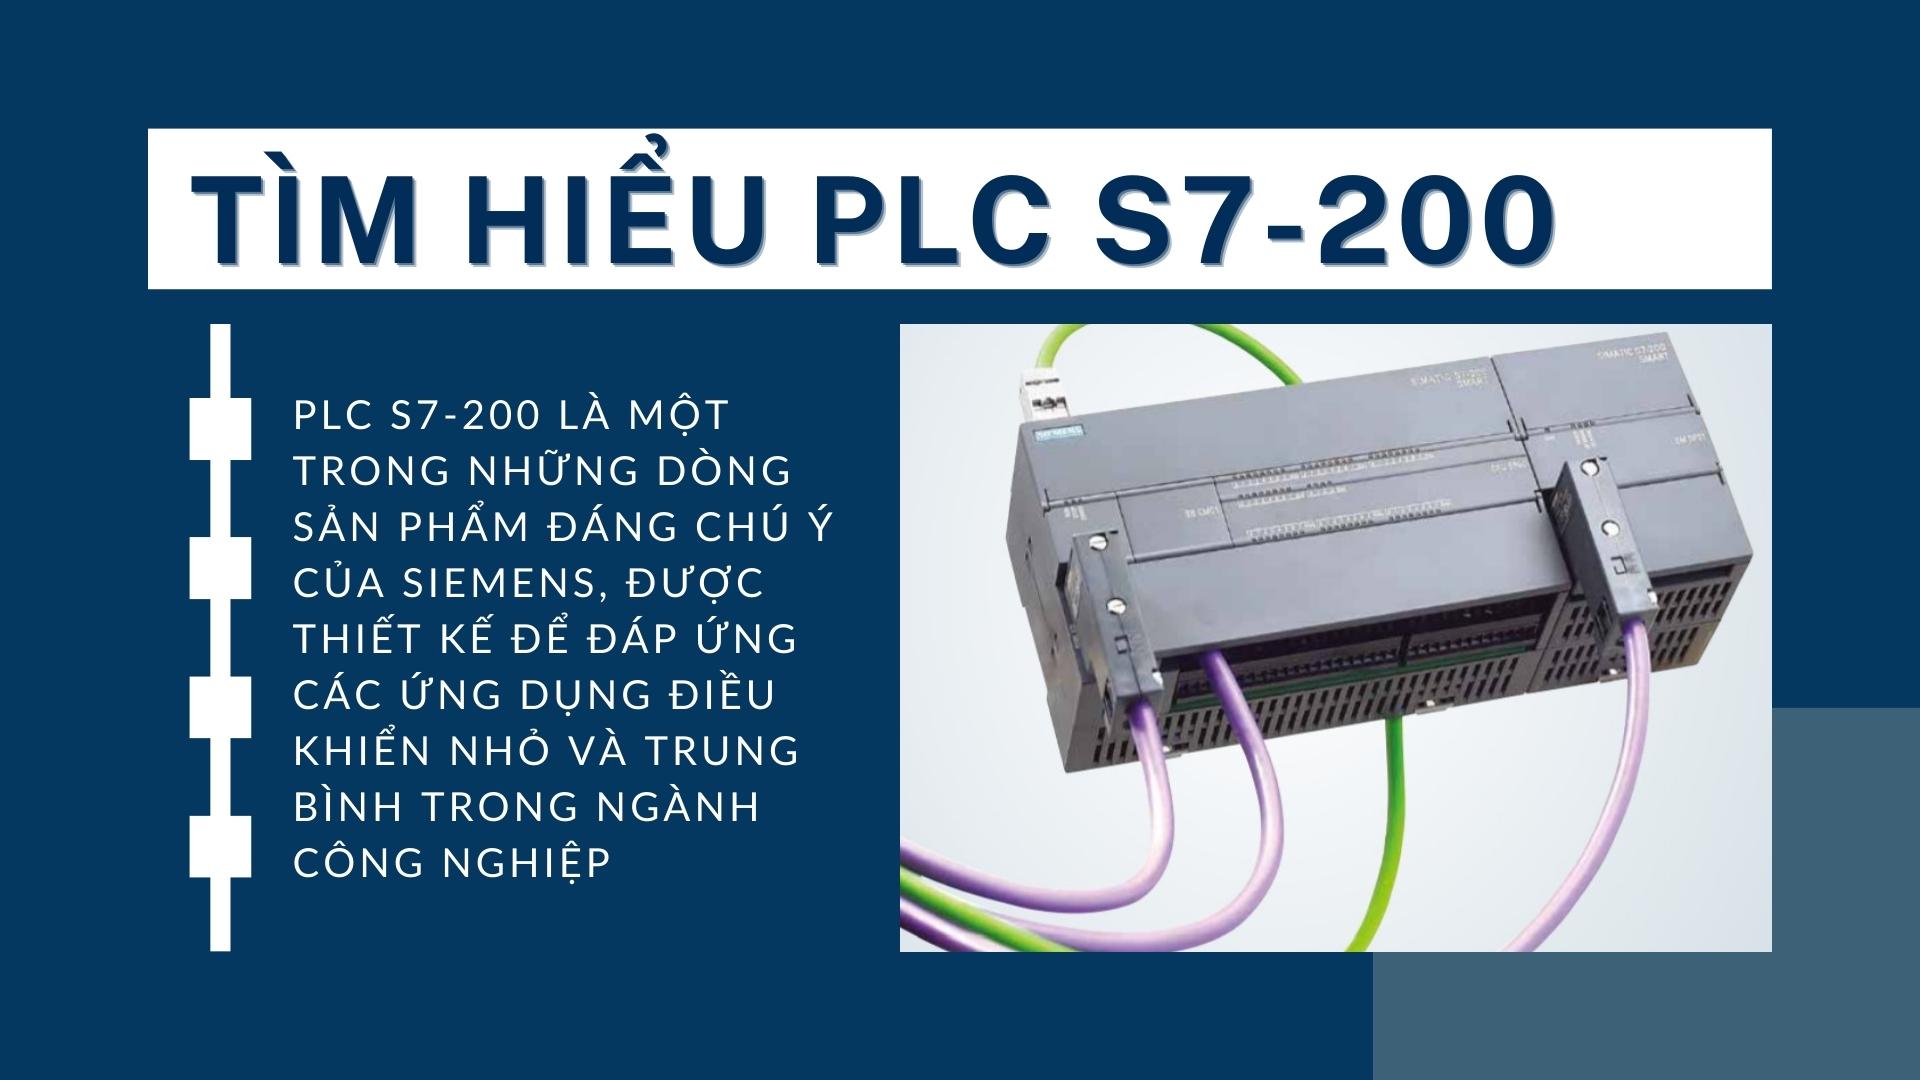 Tìm hiểu PLC S7-200